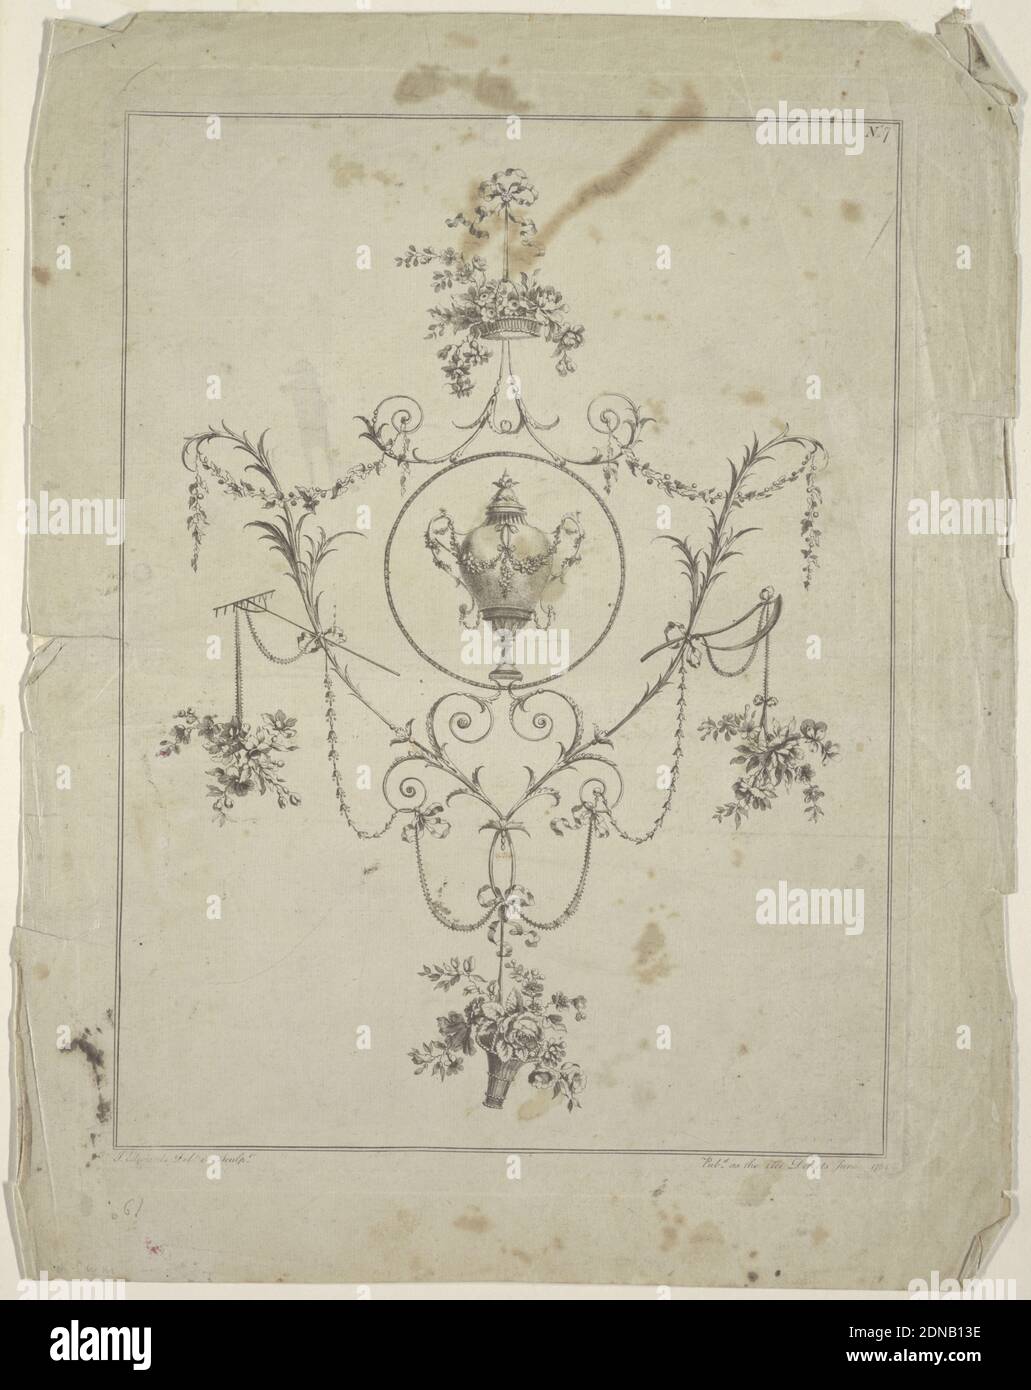 Ornamento, John Edwards, Aquatint, n. 7 di un set. Un medaglione circolare con un'urna è circondato da motivi floreali. I cestelli del fiore sono sospesi dalle staffe sulla parte superiore e sul fondo e i rami del fiore dagli attrezzi agricoli lateralmente. Angolo in alto a destra: N. 7. Due linee di inquadratura. Margine inferiore: J. Edwards del. Et sculpt; Pub,d come l'Arte dirige Giugno 1784, Inghilterra, 1784, ornamento, Stampa Foto Stock